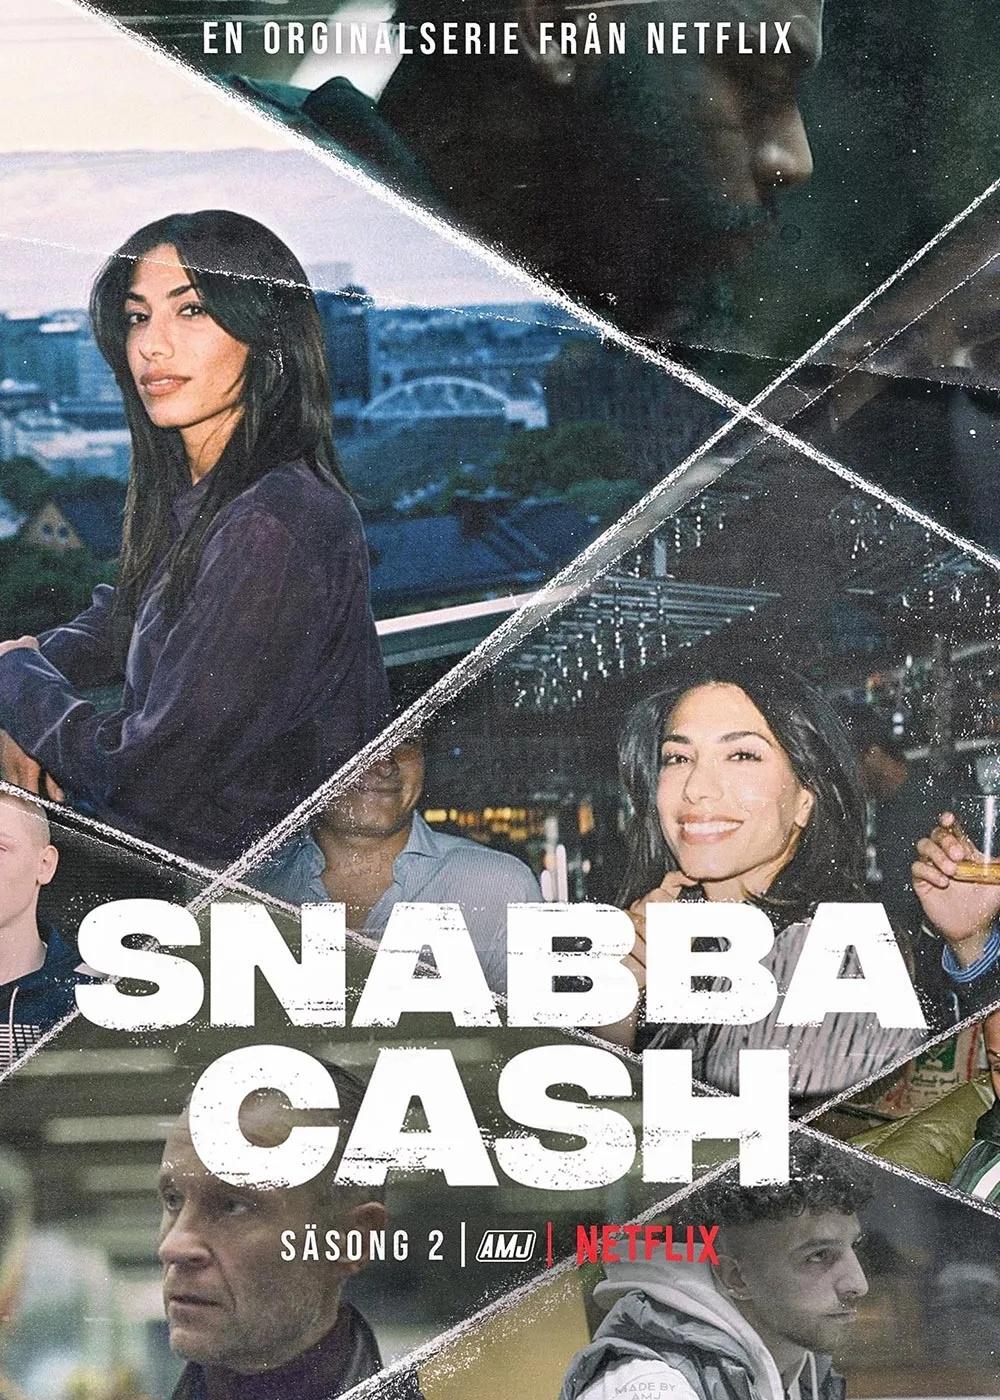 Постер фильма Шальные деньги | Snabba Cash